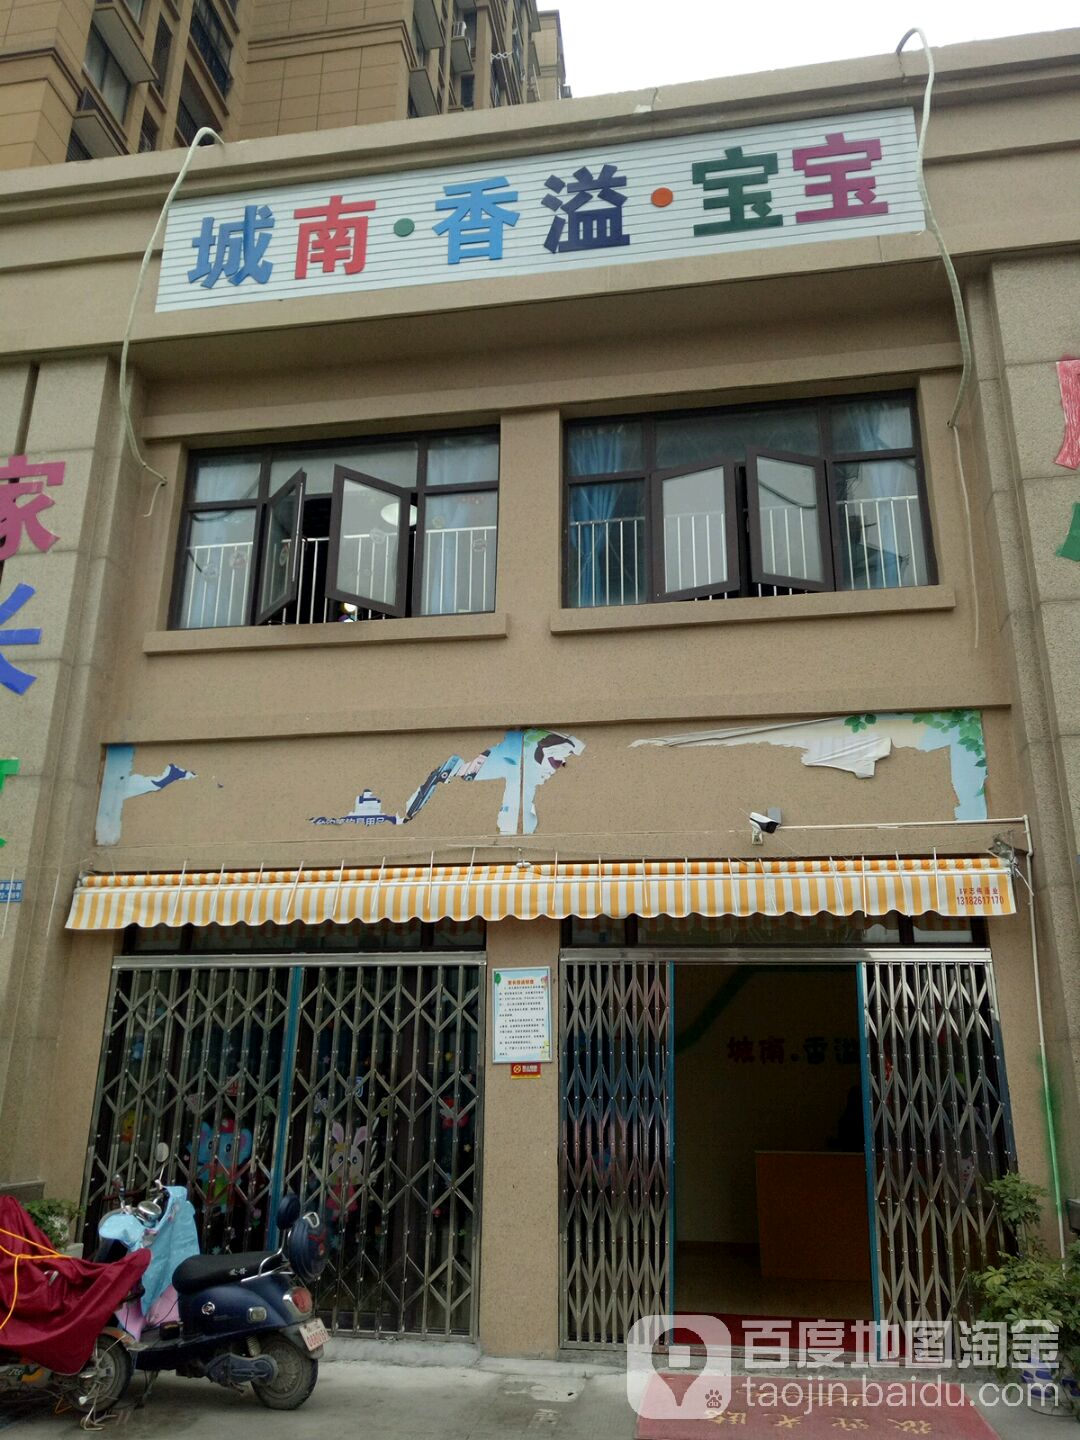 城南香溢宝宝幼儿园的图片